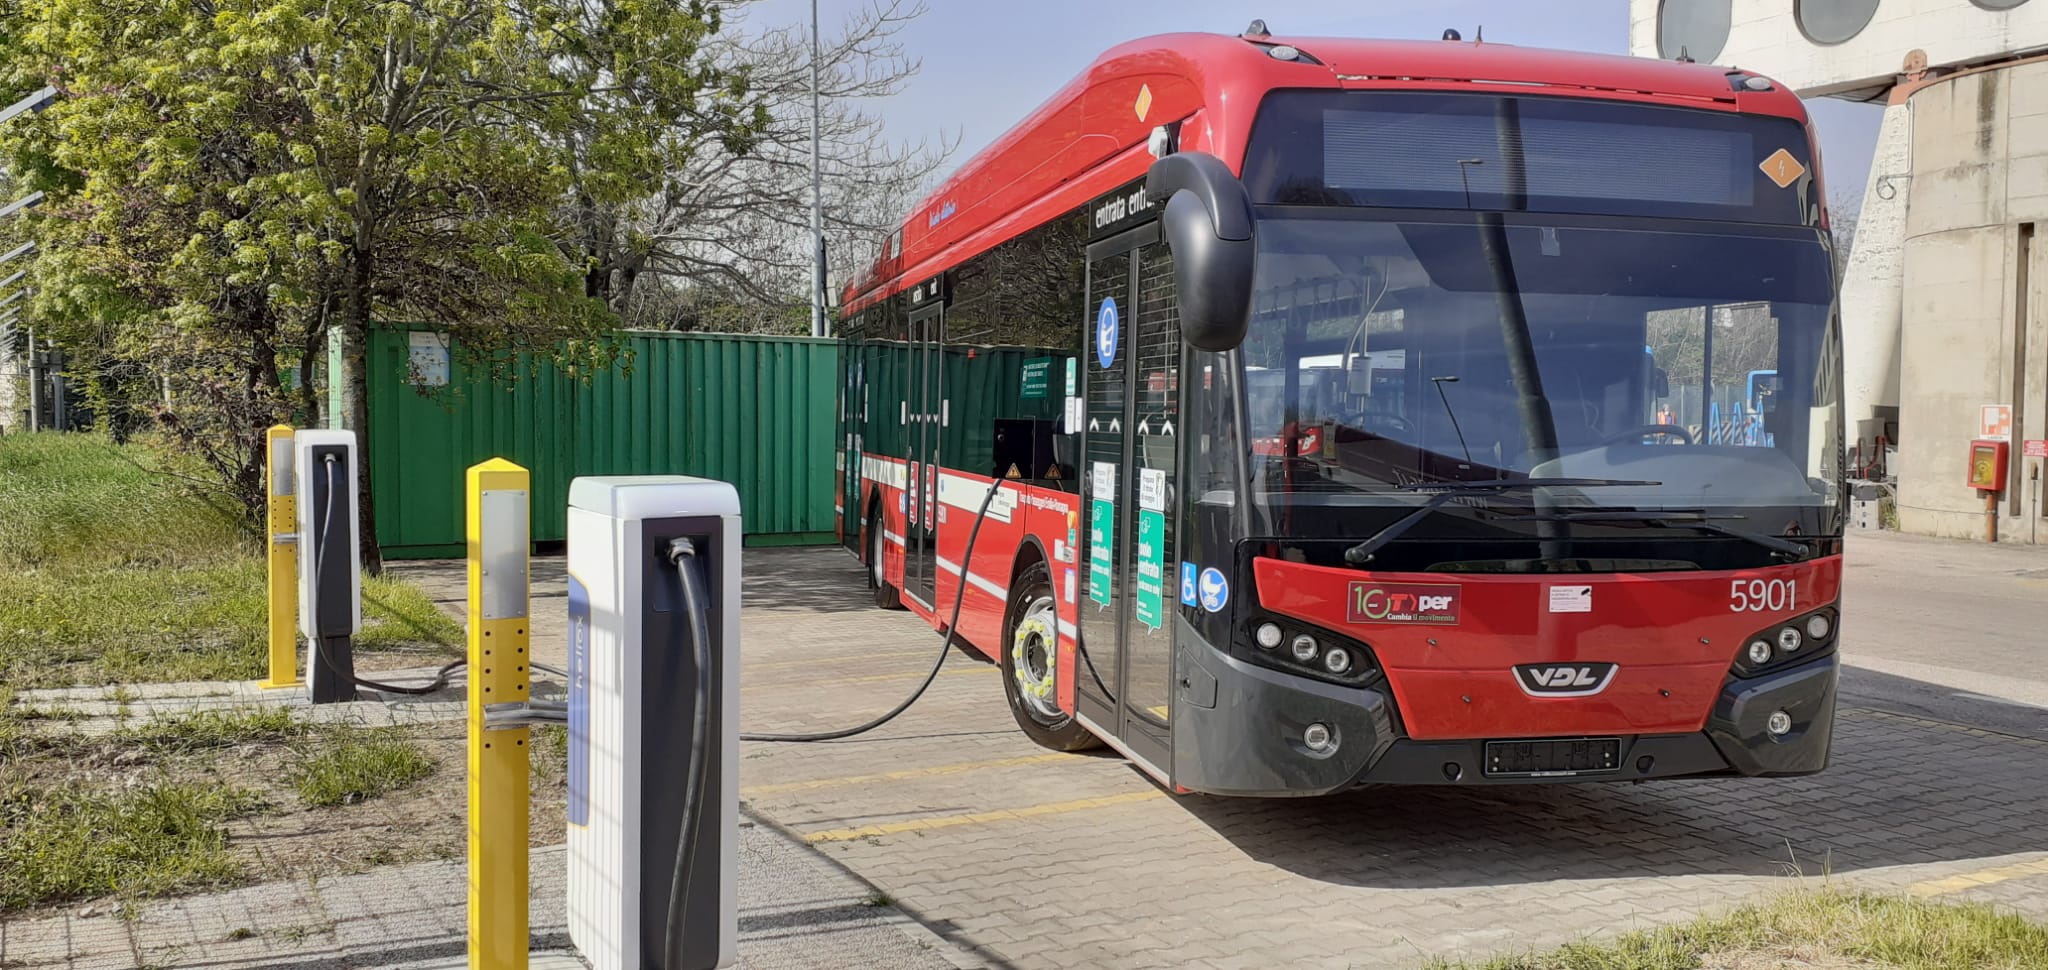 Trasporto pubblico più sostenibile a Bologna: in arrivo 21 e-bus Citea per la flotta Tper